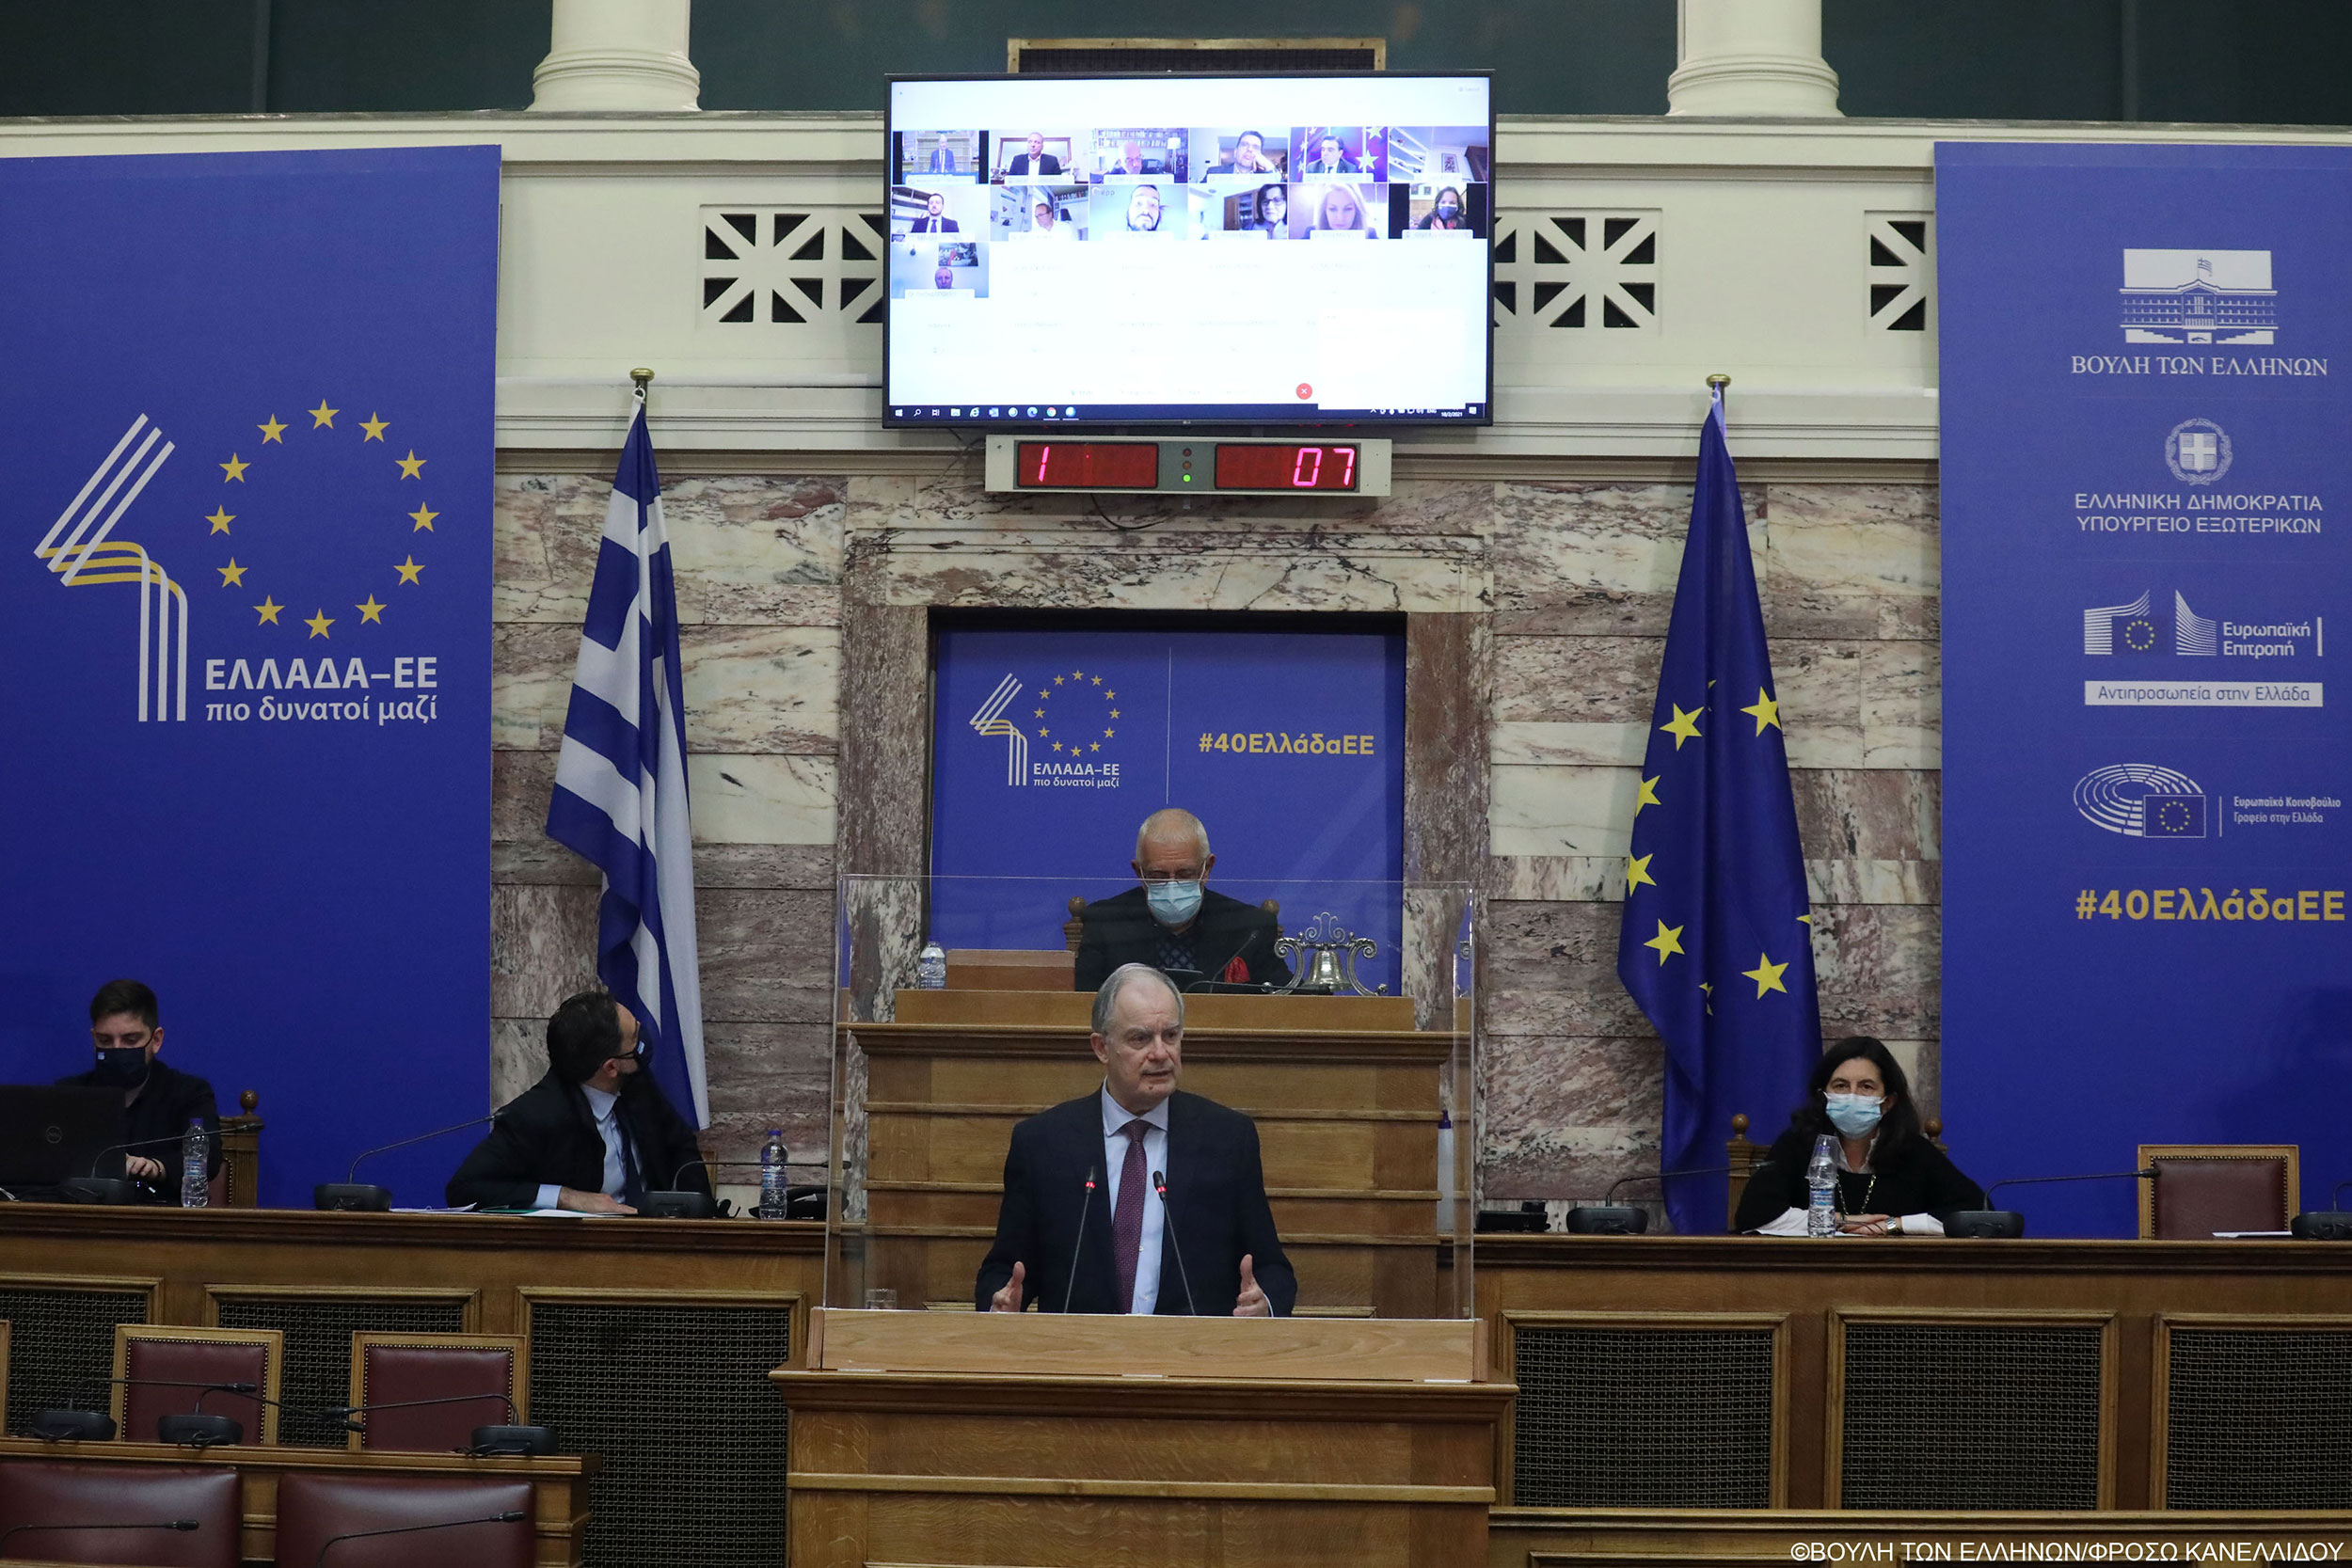 Ο πρόεδρος της Βουλής Κωνσταντίνος Τασούλας στην ομιλία του στην επετειακή εκδήλωση «Ελλάδα - ΕΕ: 40 χρόνια πιο δυνατοί μαζί»